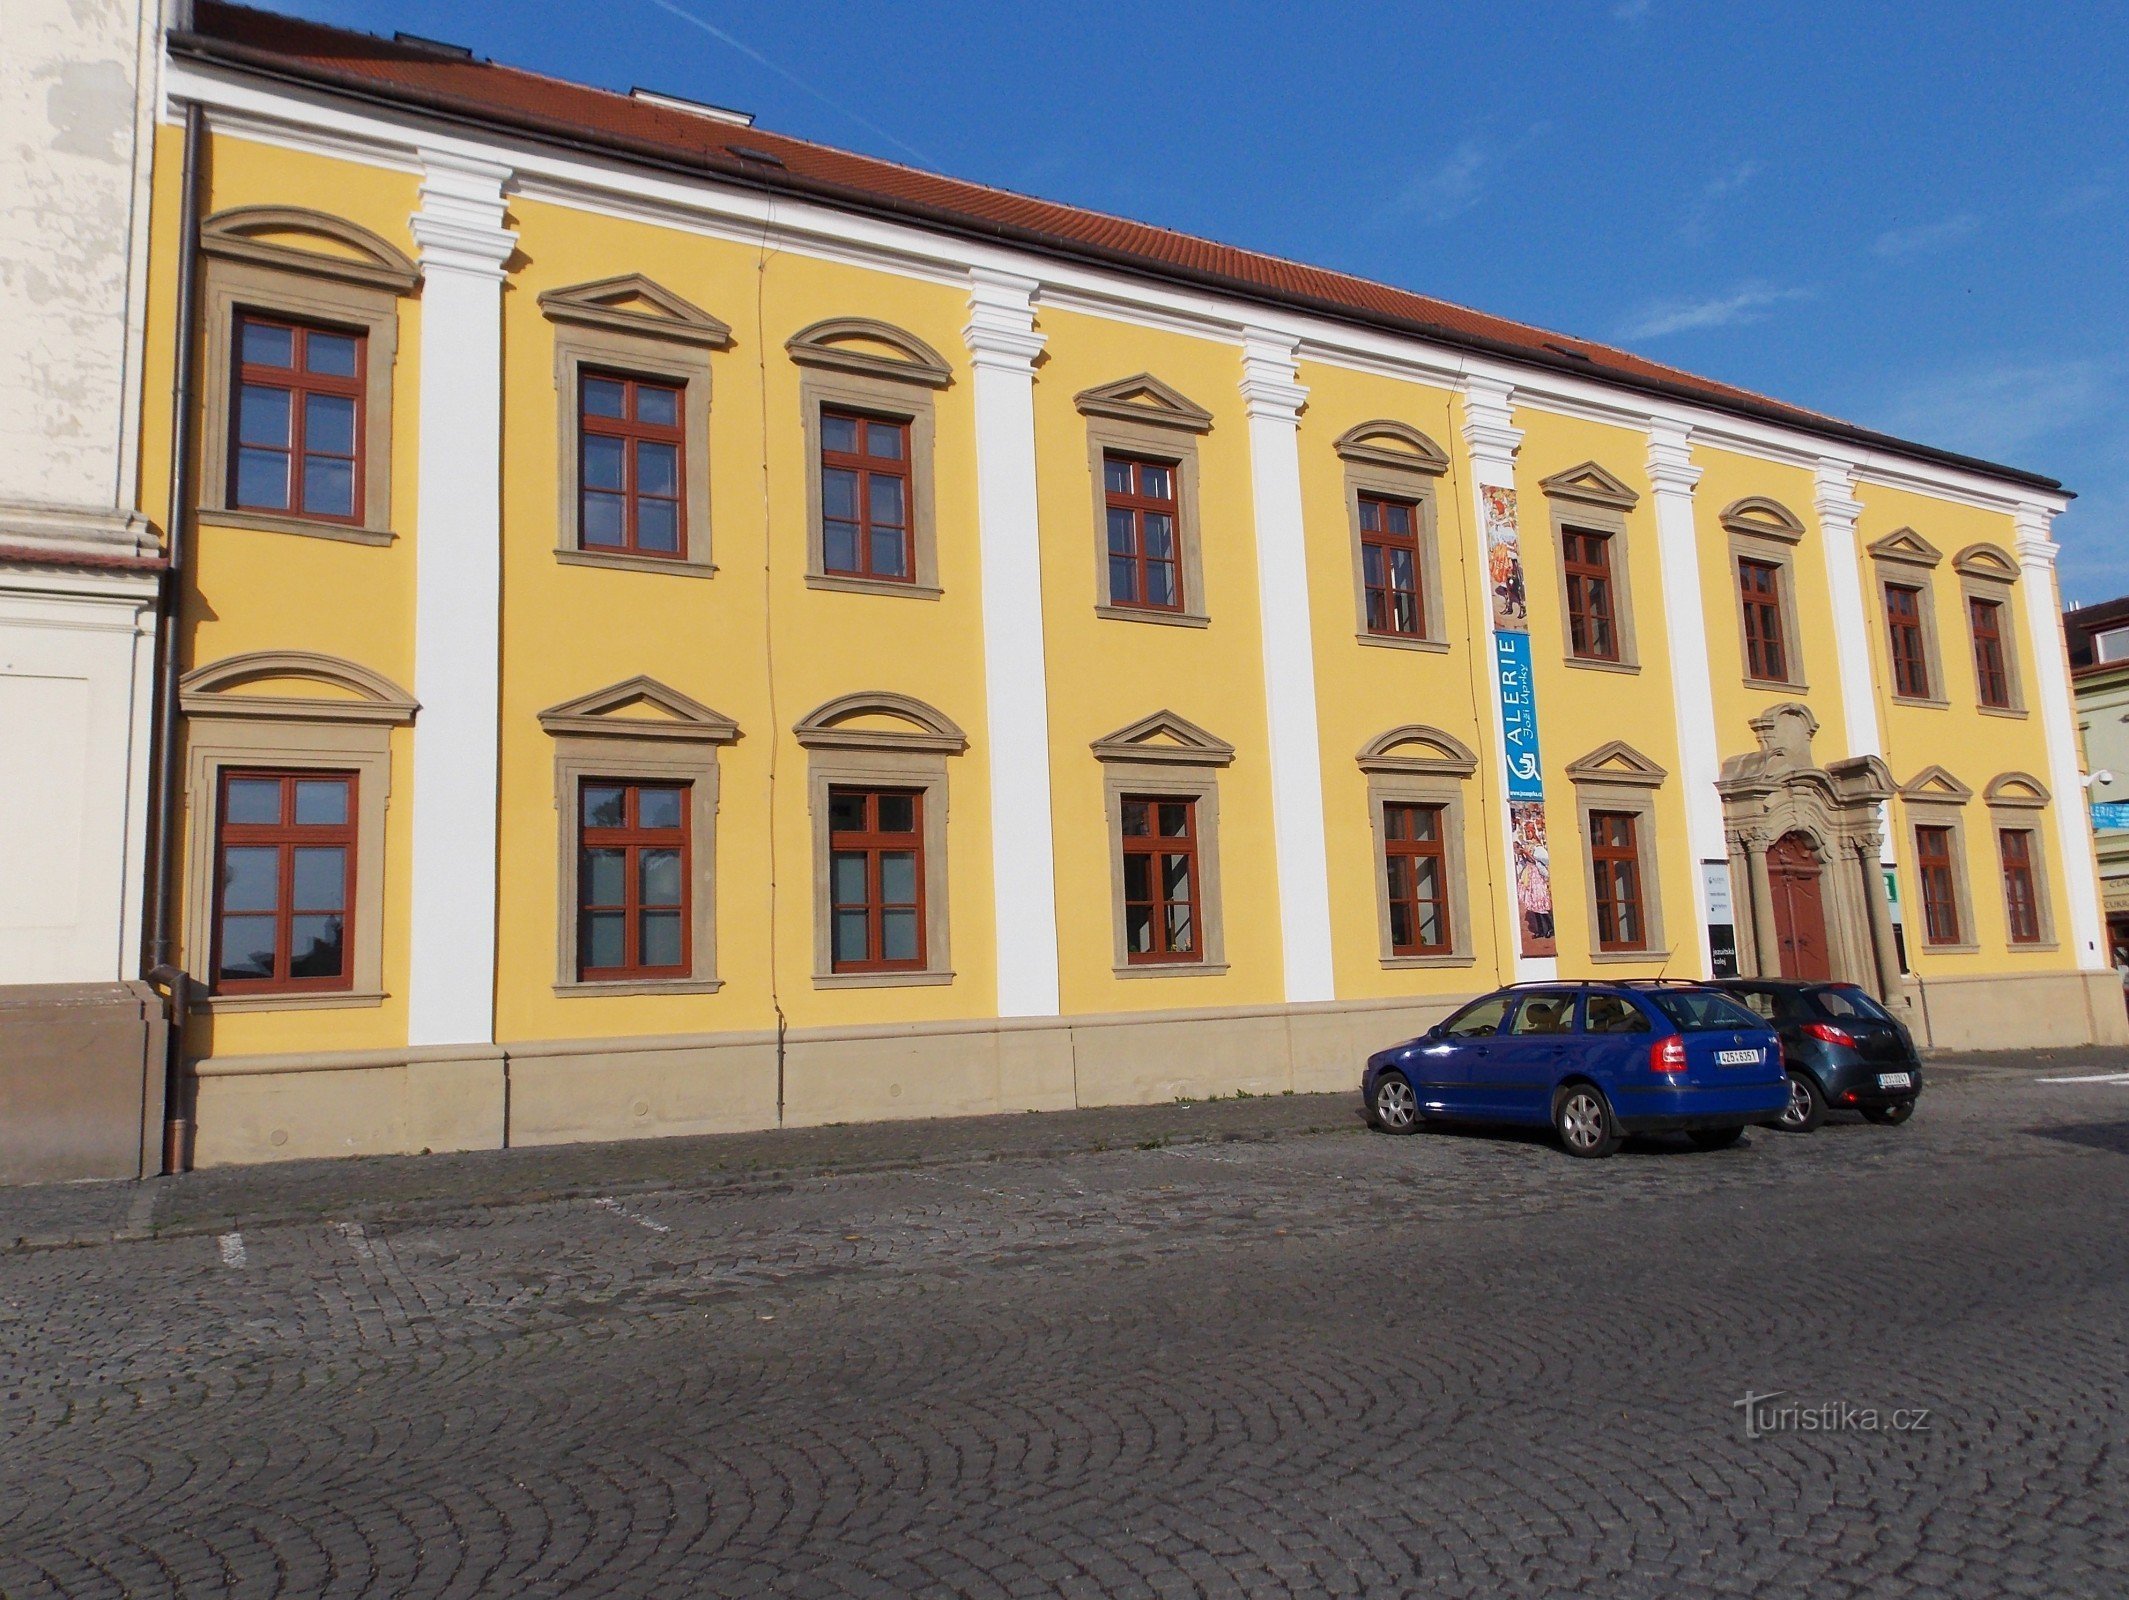 Slovački centar kulture i tradicije u Uh. Hradišti